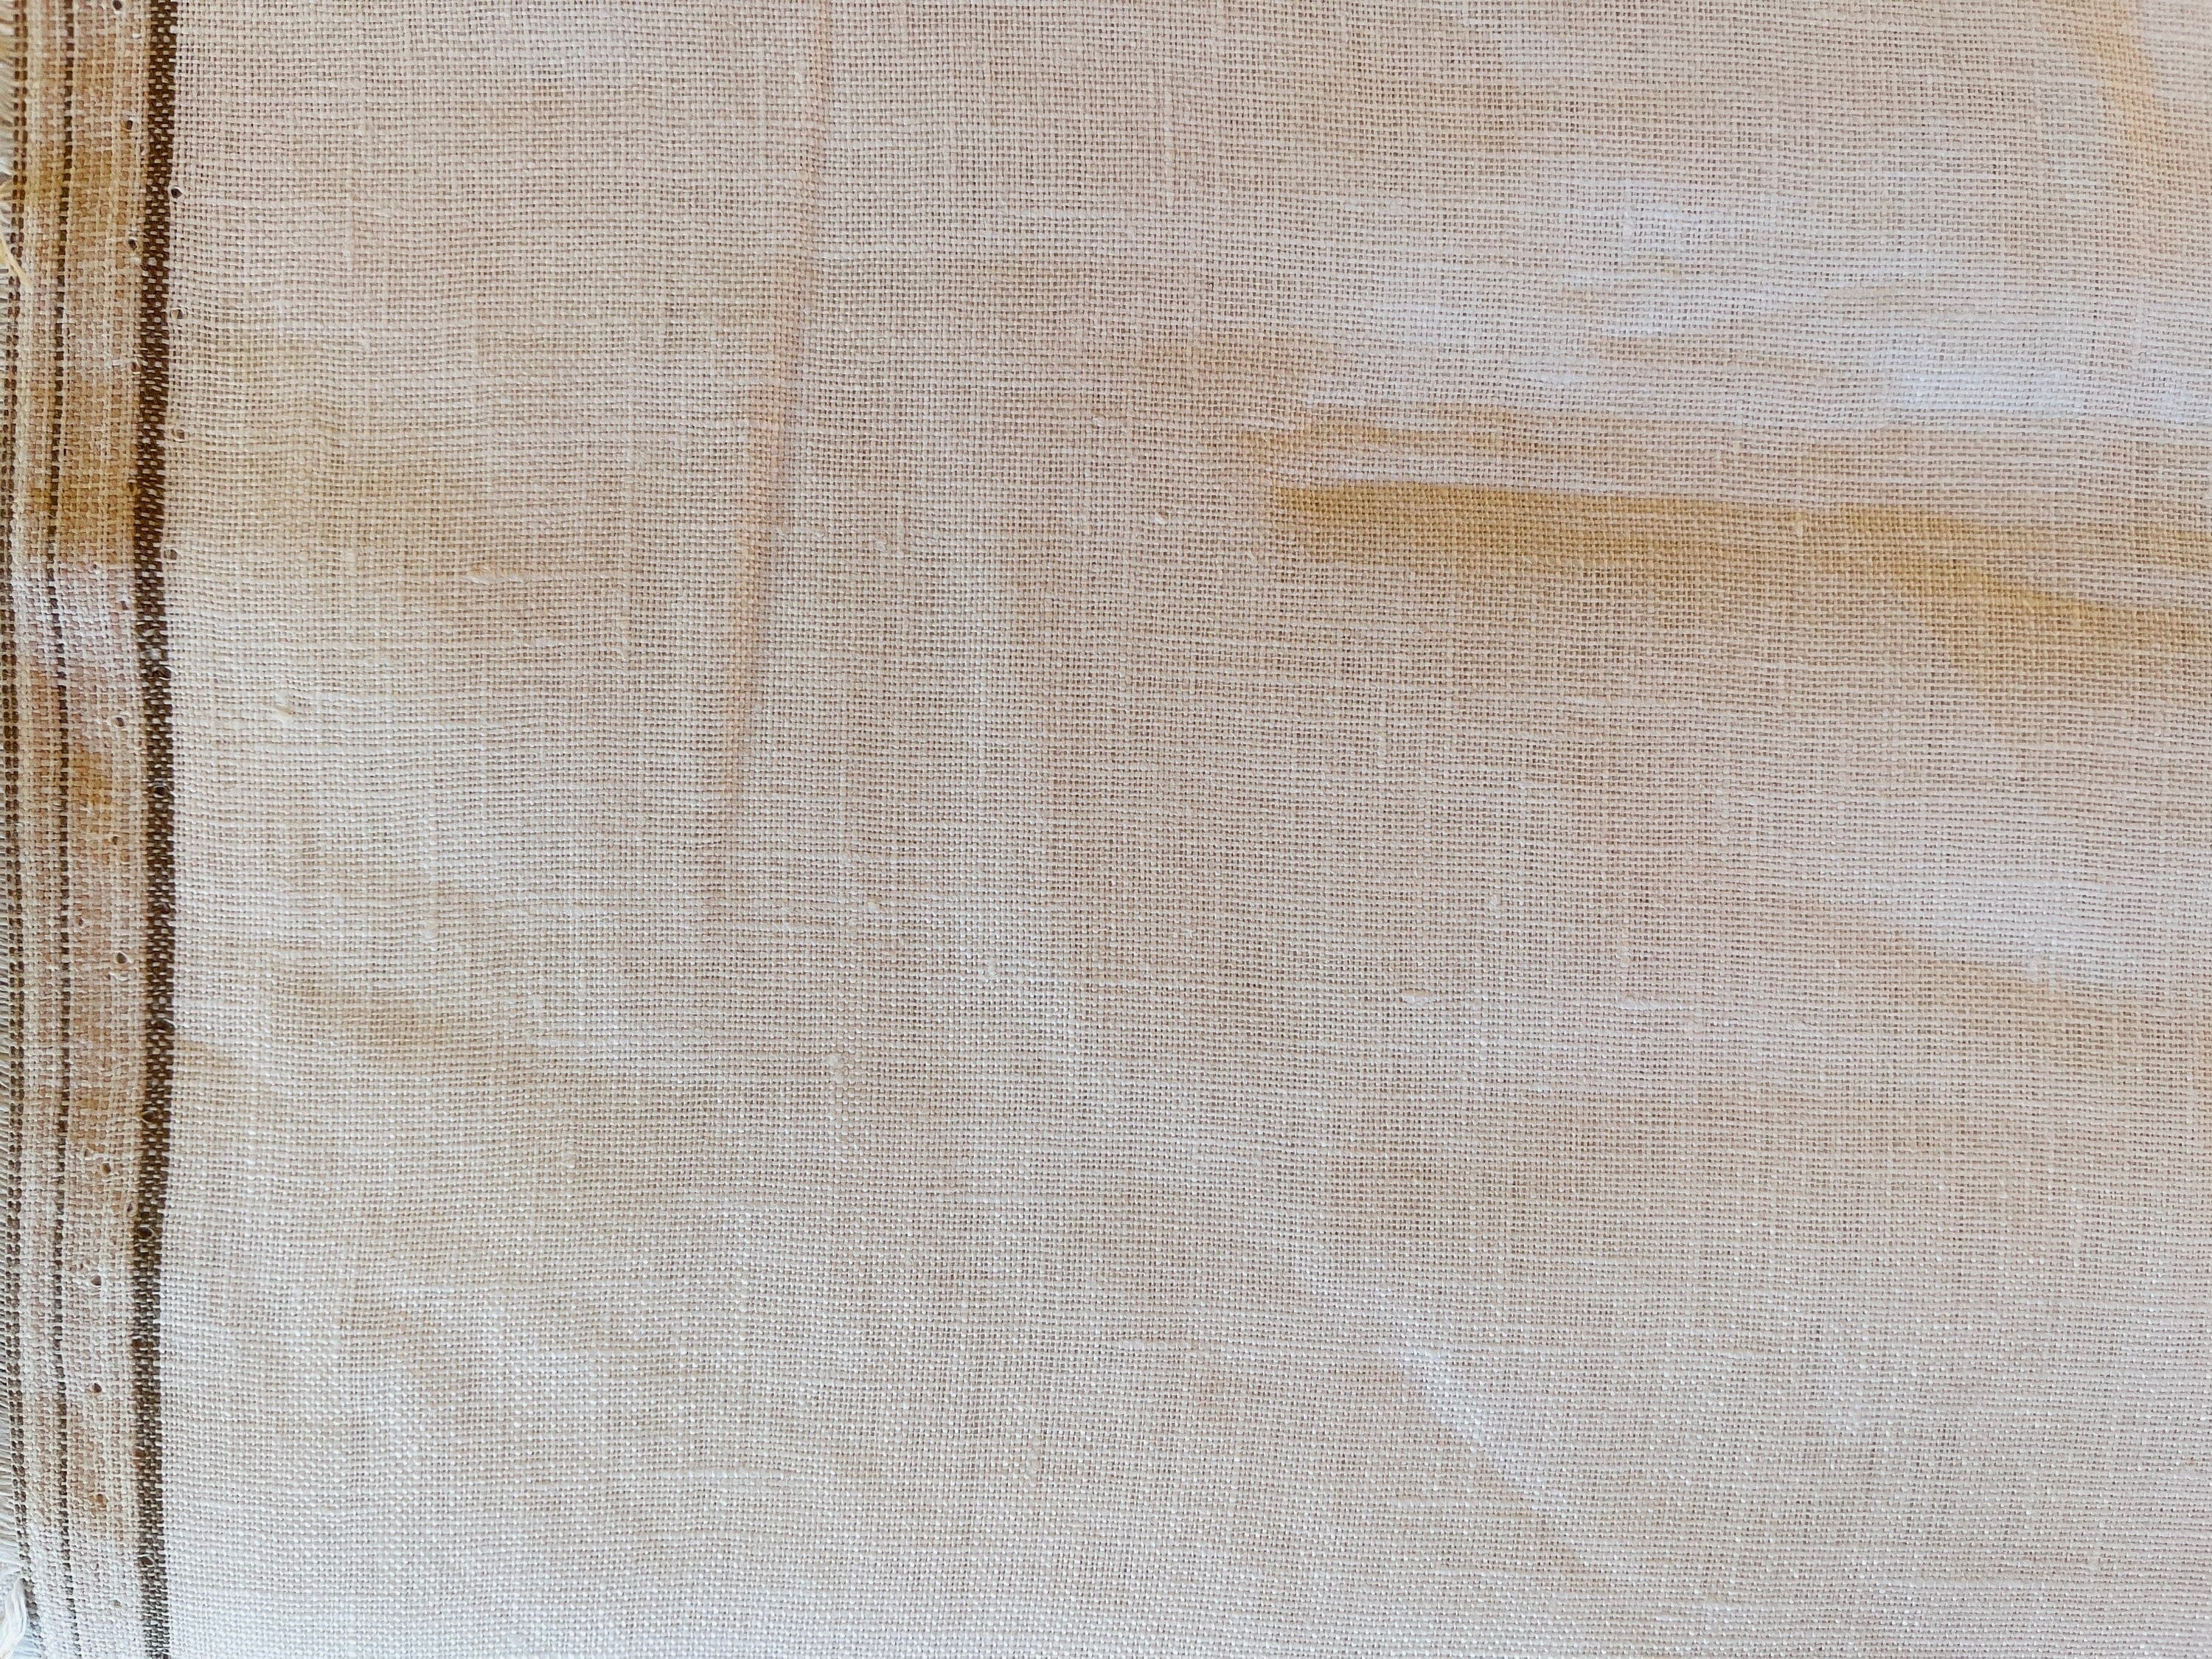 Limerick Linen - Yarn Dyed - White Linen Summer Dress Fabric - Robert Kaufman - L211-1387